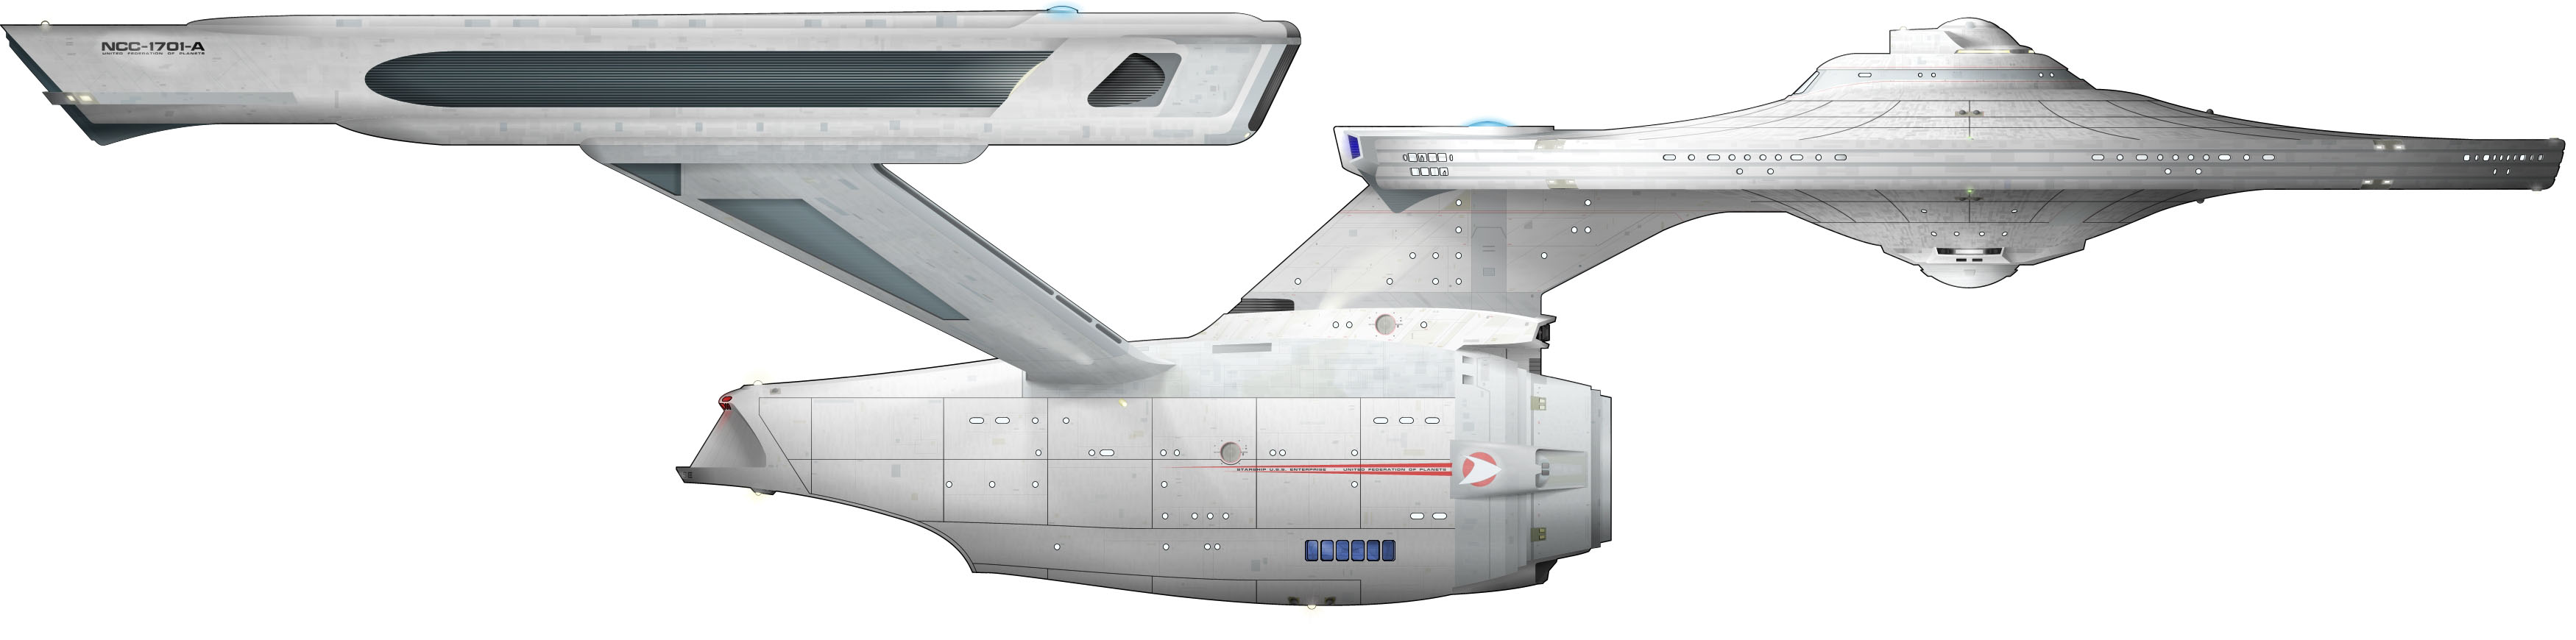 enterprise-ncc-1701-a-sheet-3.jpg